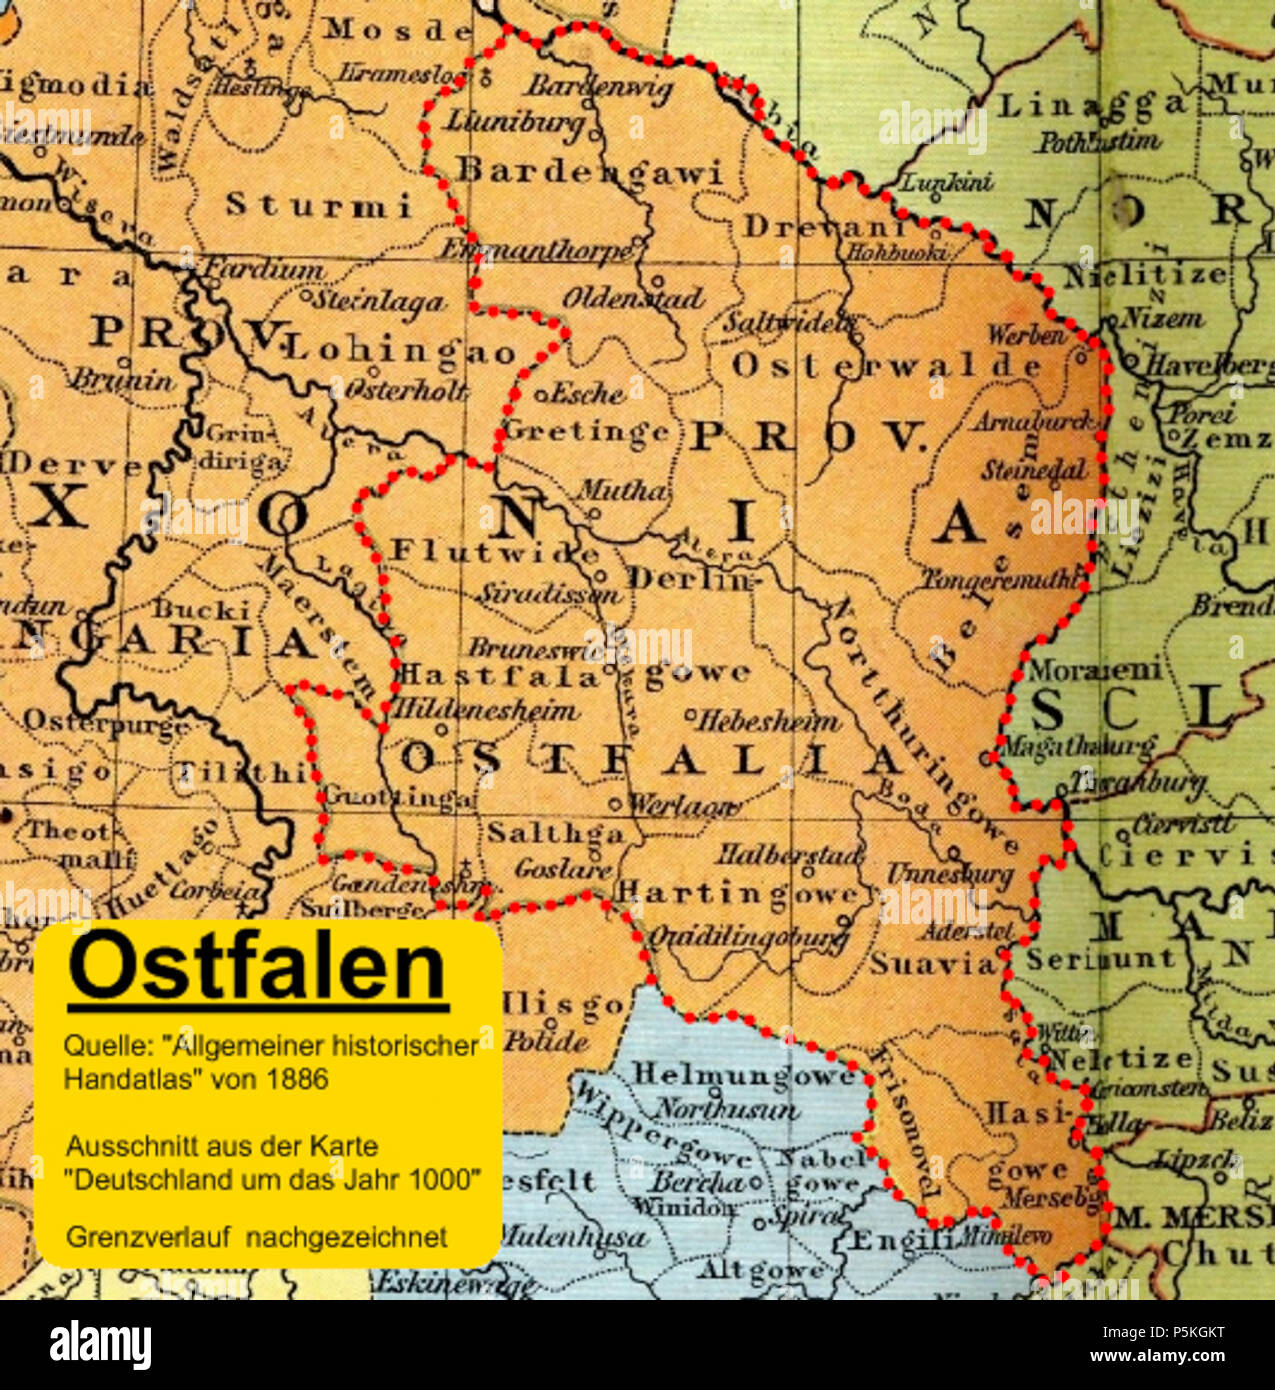 86 Allgemeiner historischer Handatlas - Deutschland um das Jahr 1000 - Ausschnitt Provinz Ostfalen Stock Photo